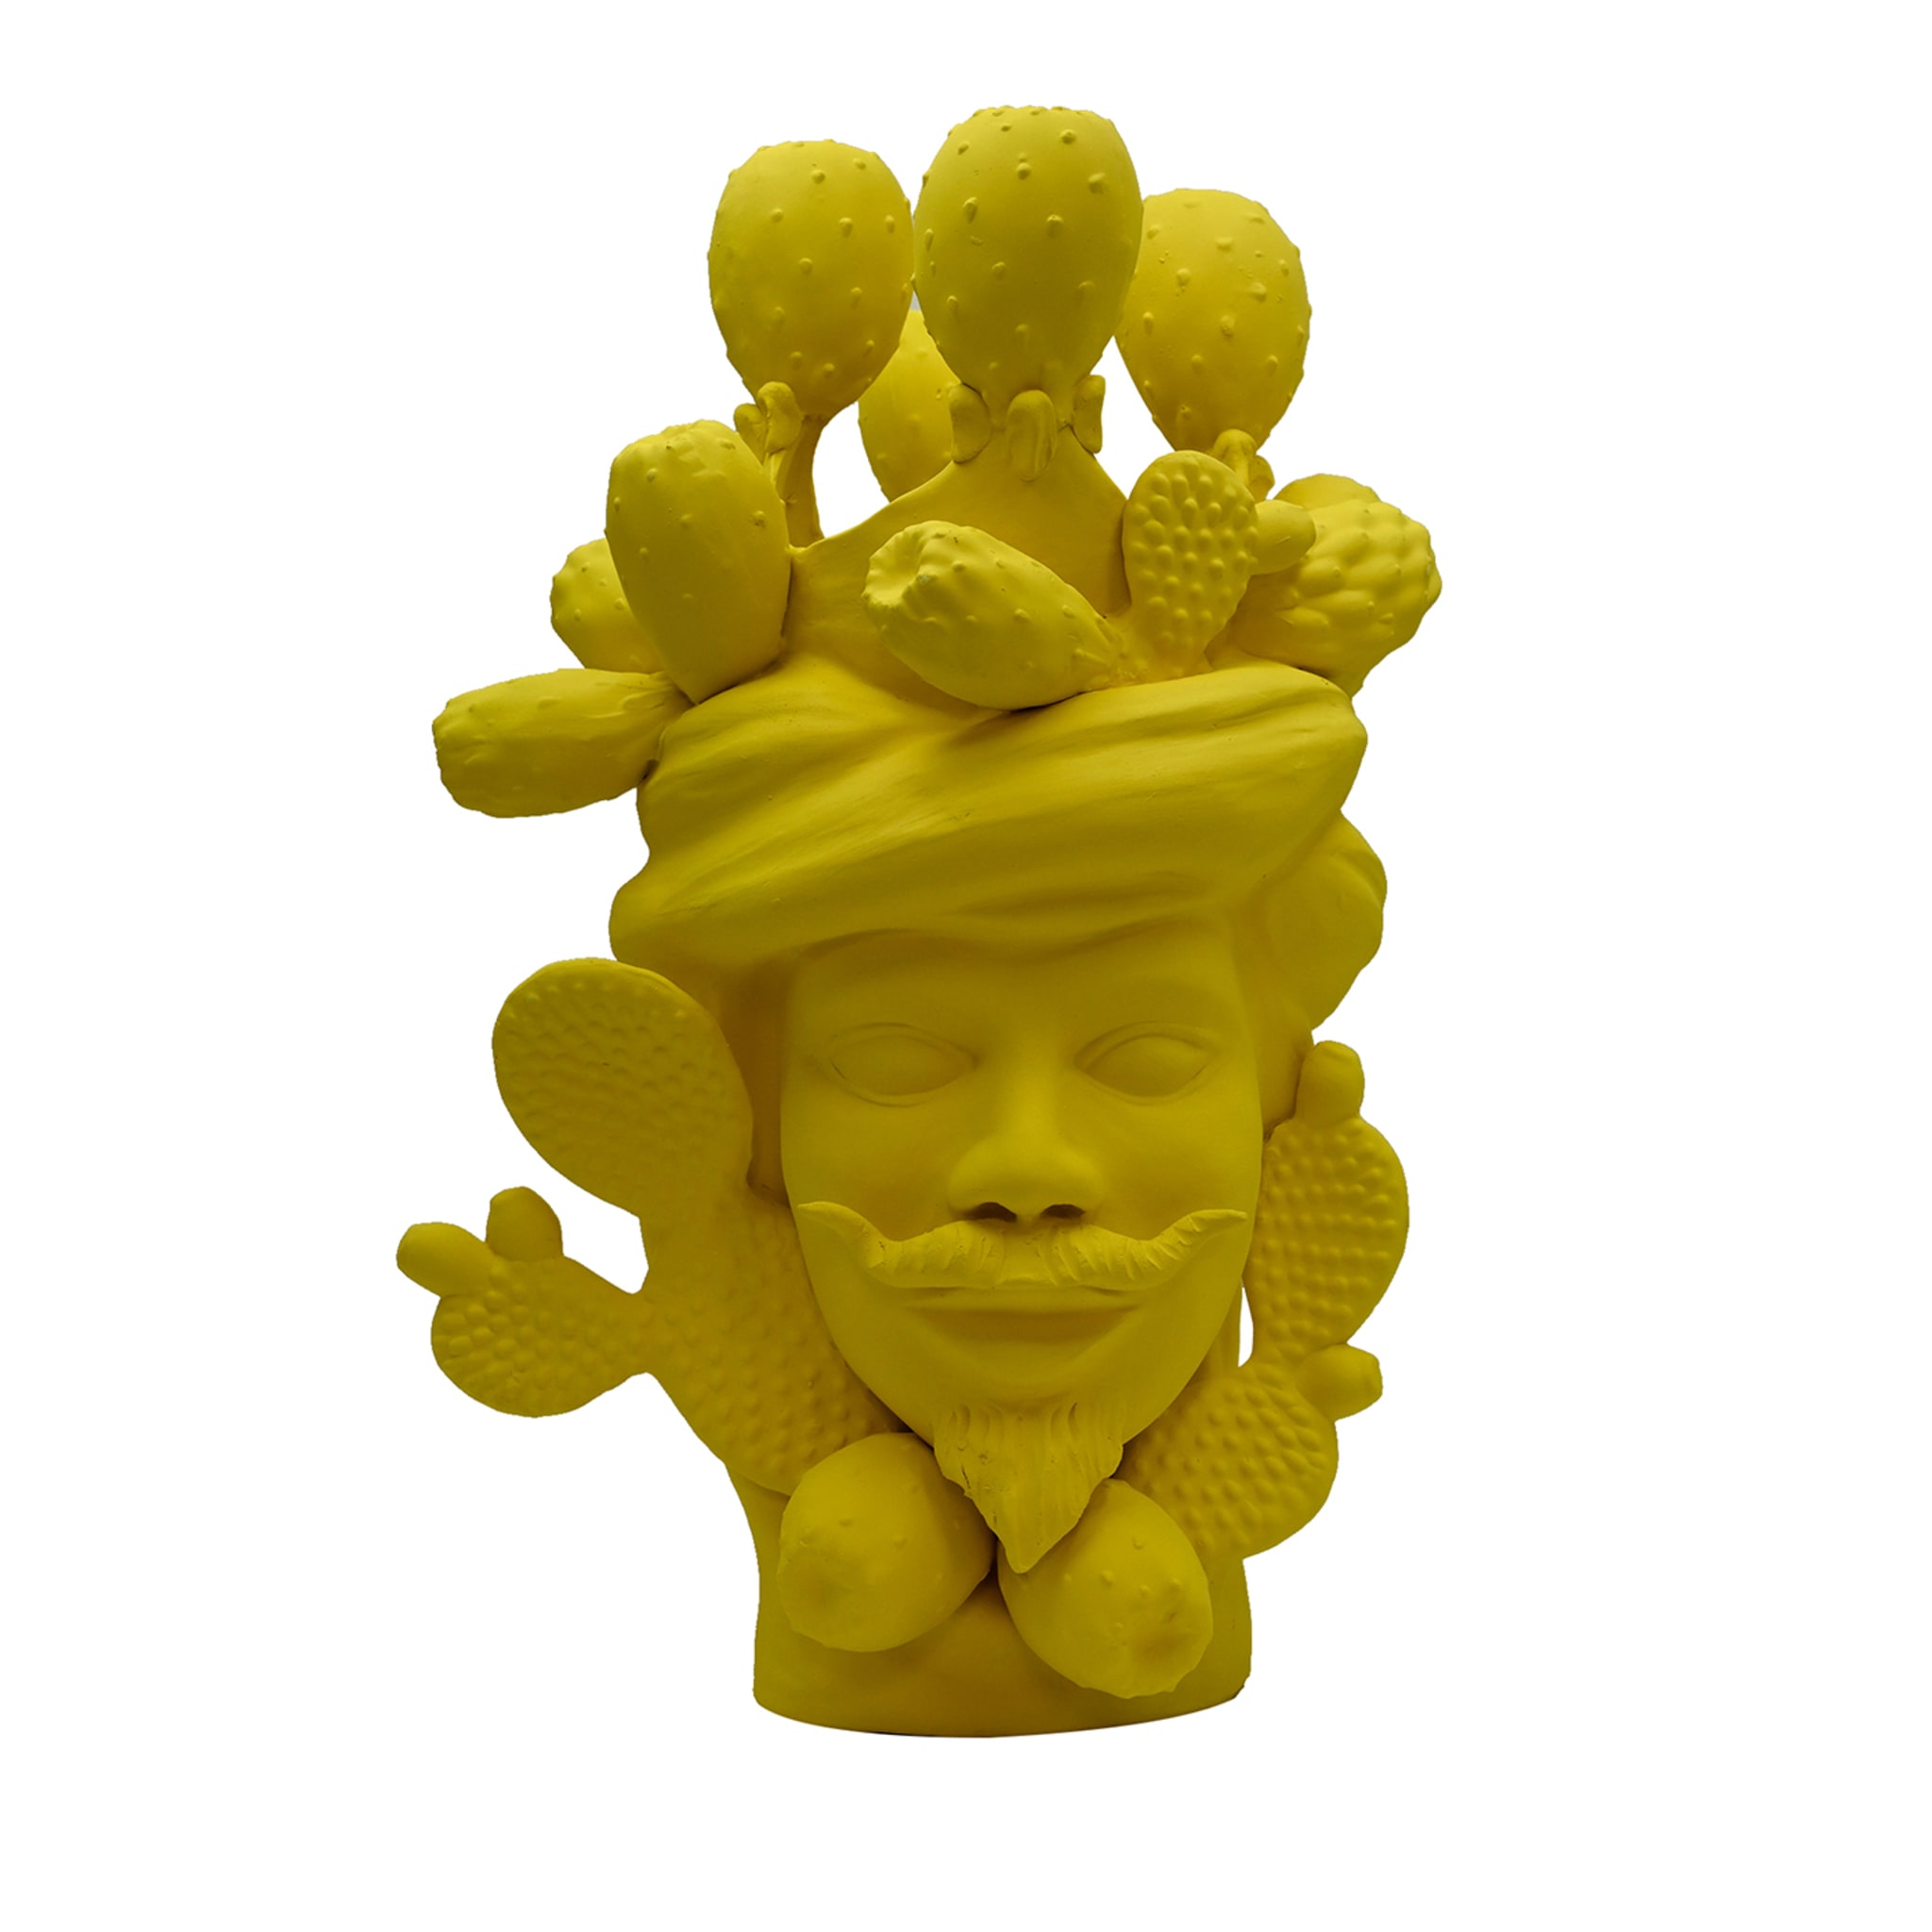 Moor's Head Yellow Unique Sculpture